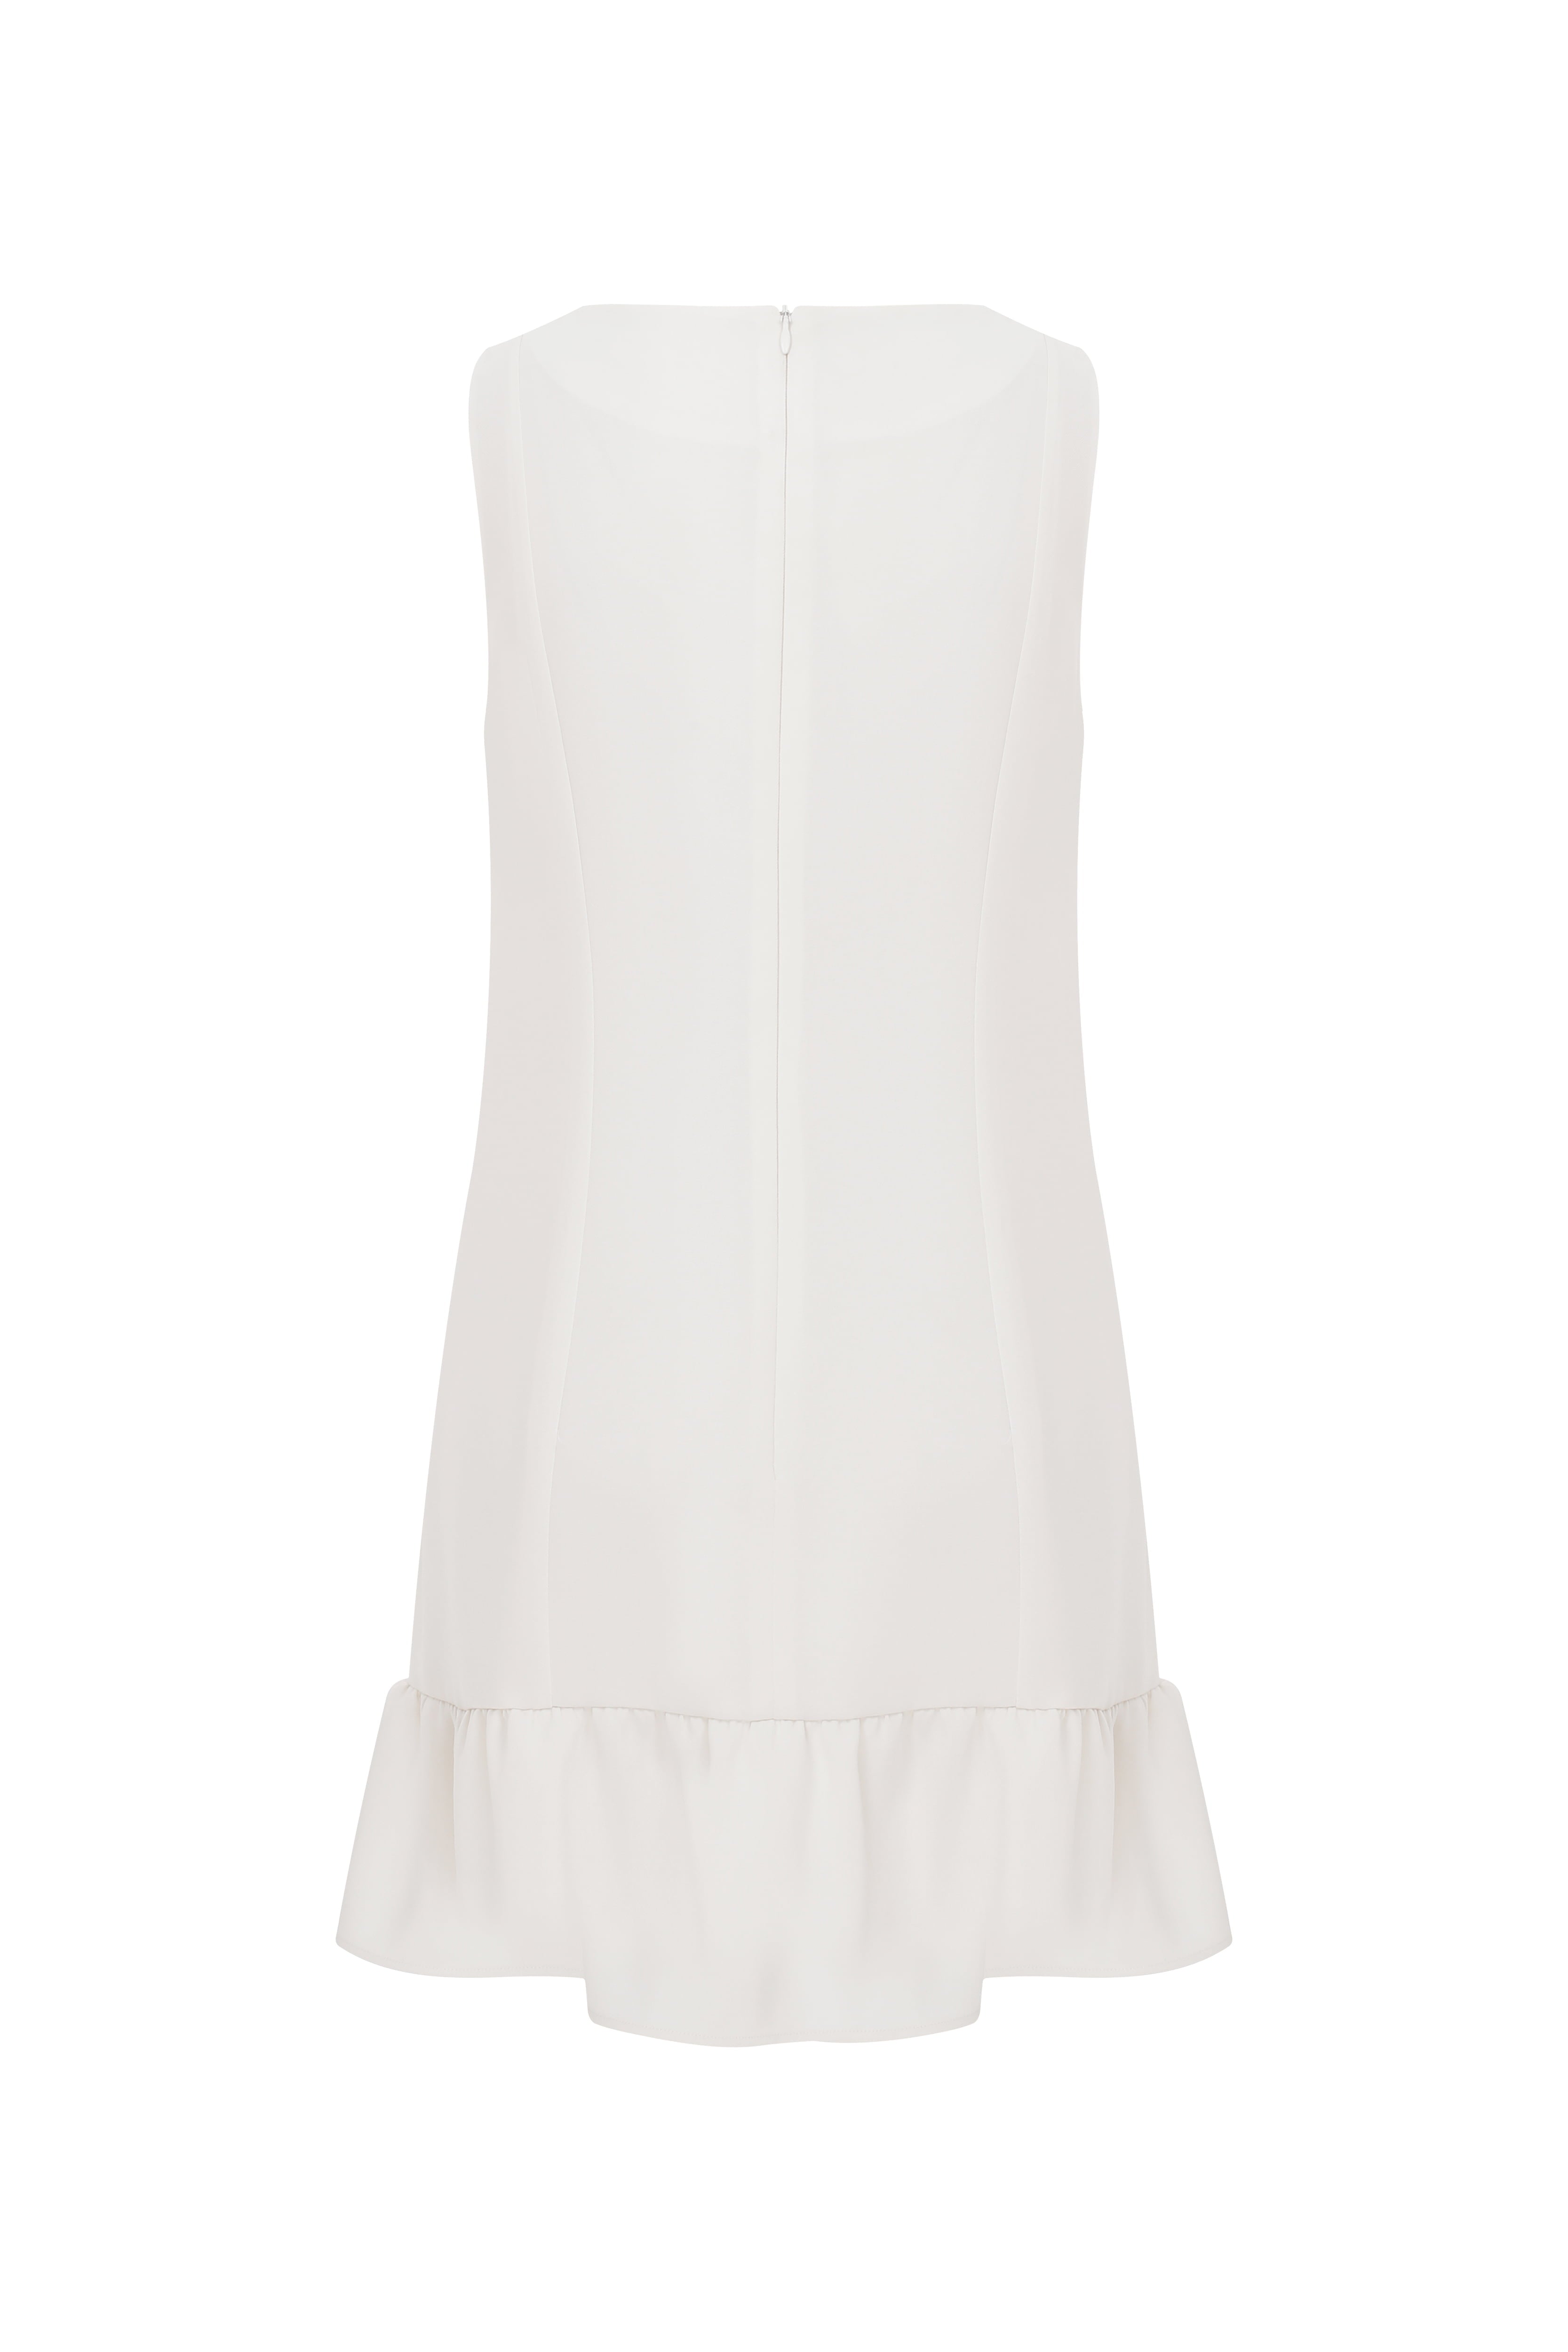 Stone Embellished White Mini Dress--[ECRU]